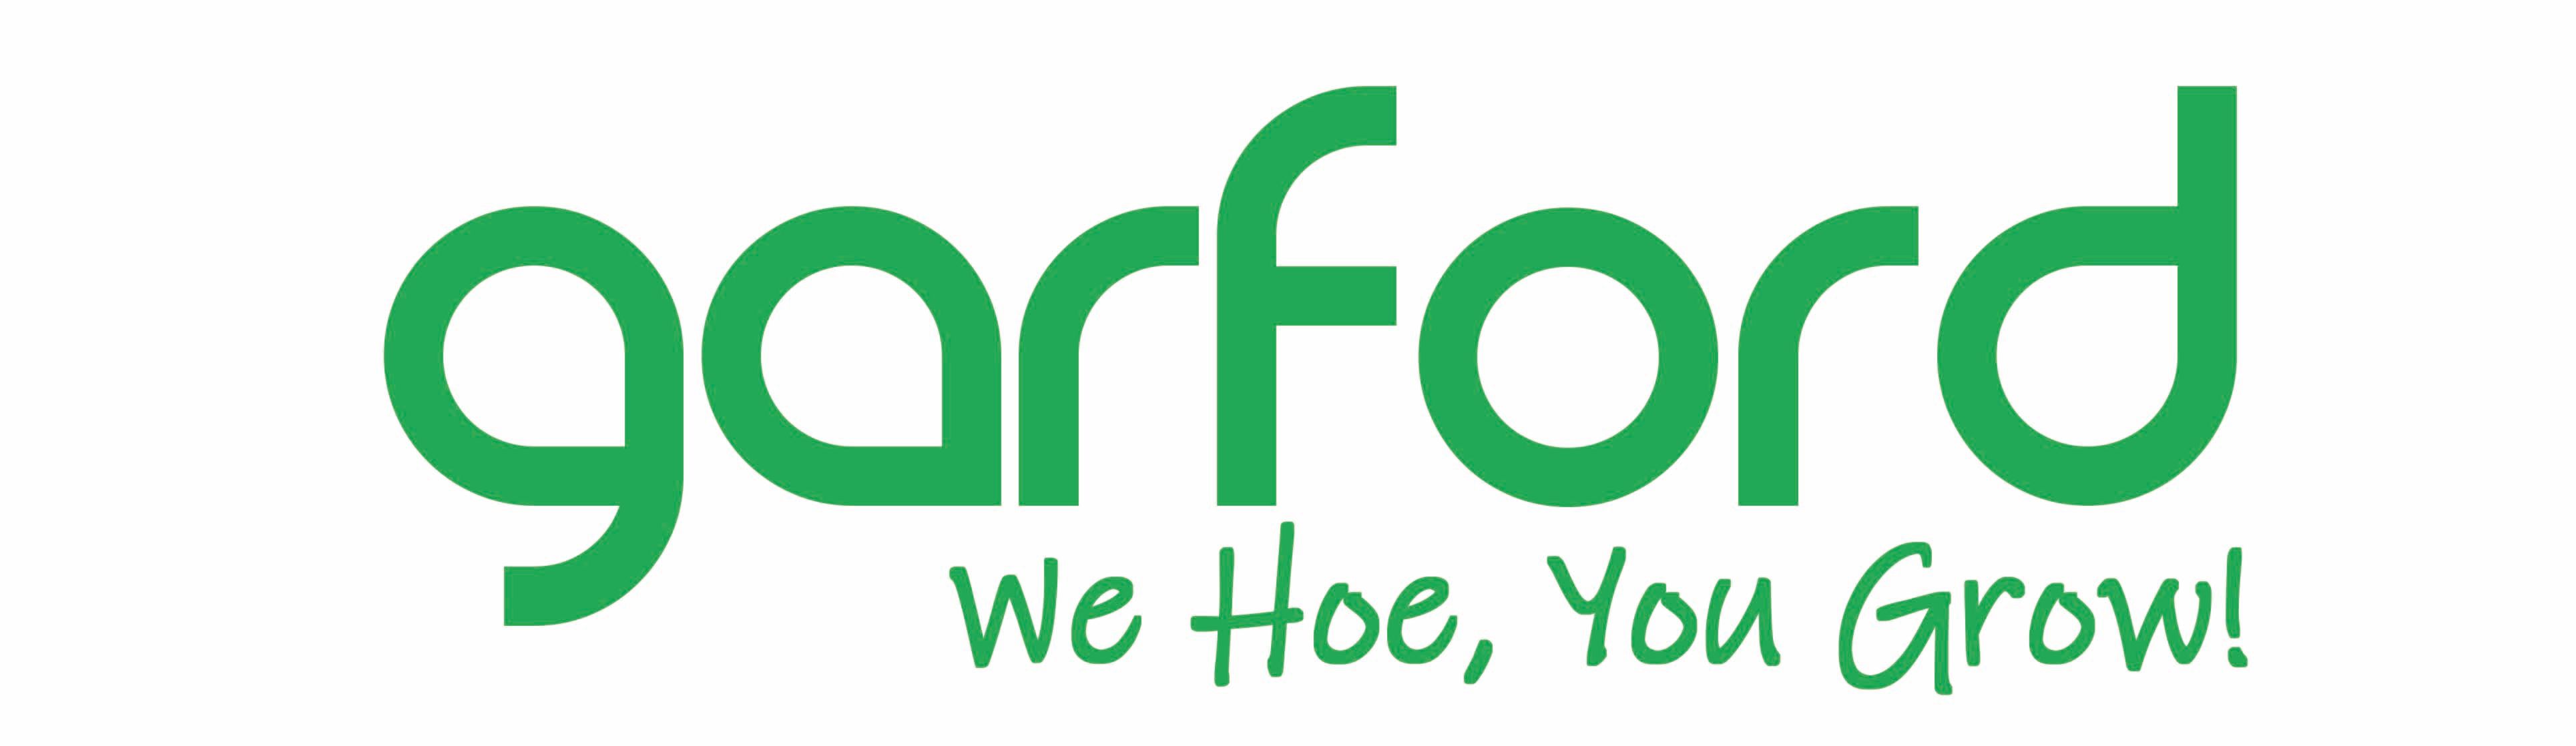 Garford new logo for Cereals demos